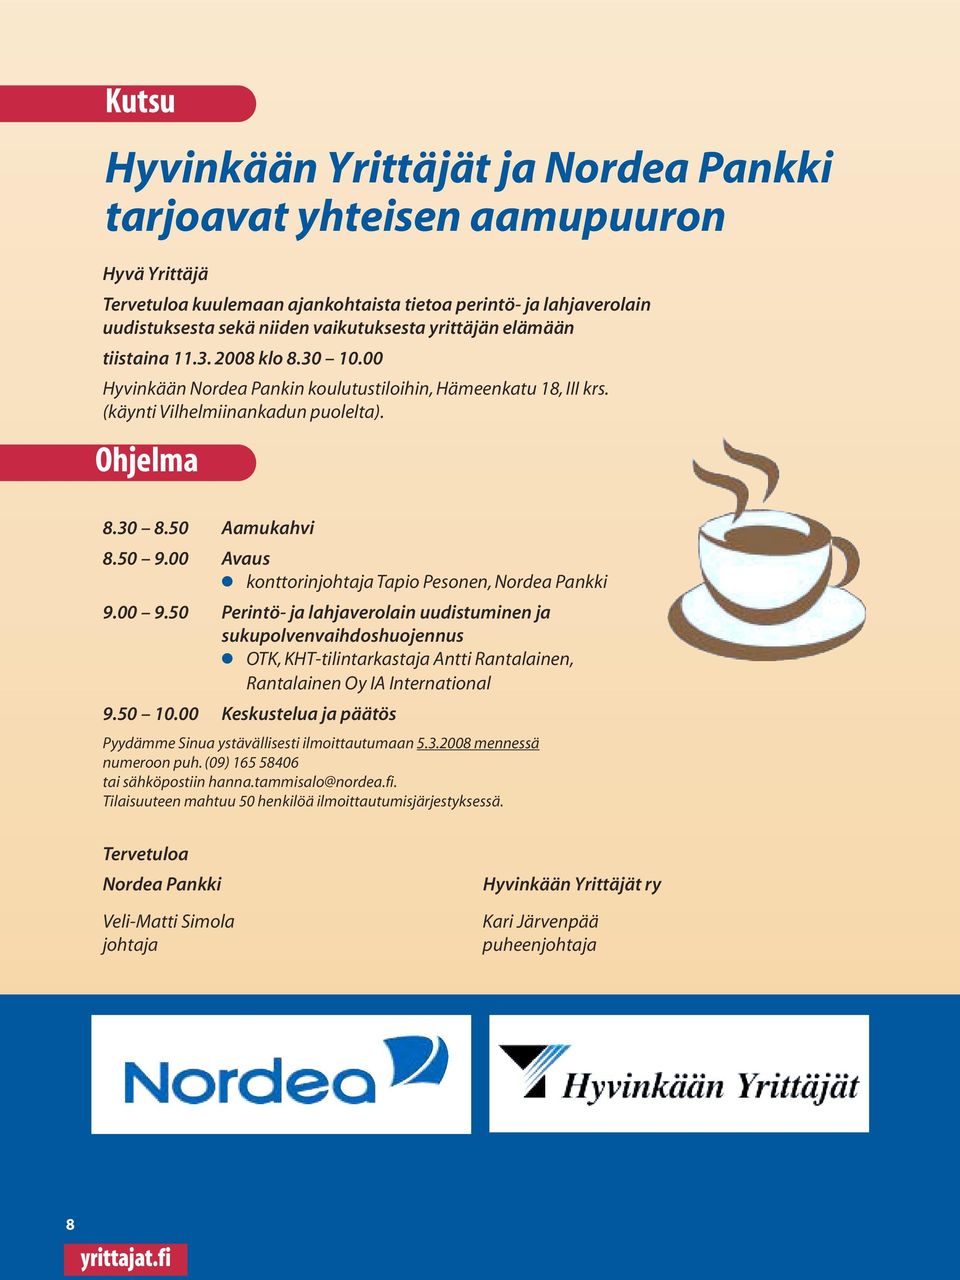 00 Avaus konttorinjohtaja Tapio Pesonen, Nordea Pankki 9.00 9.